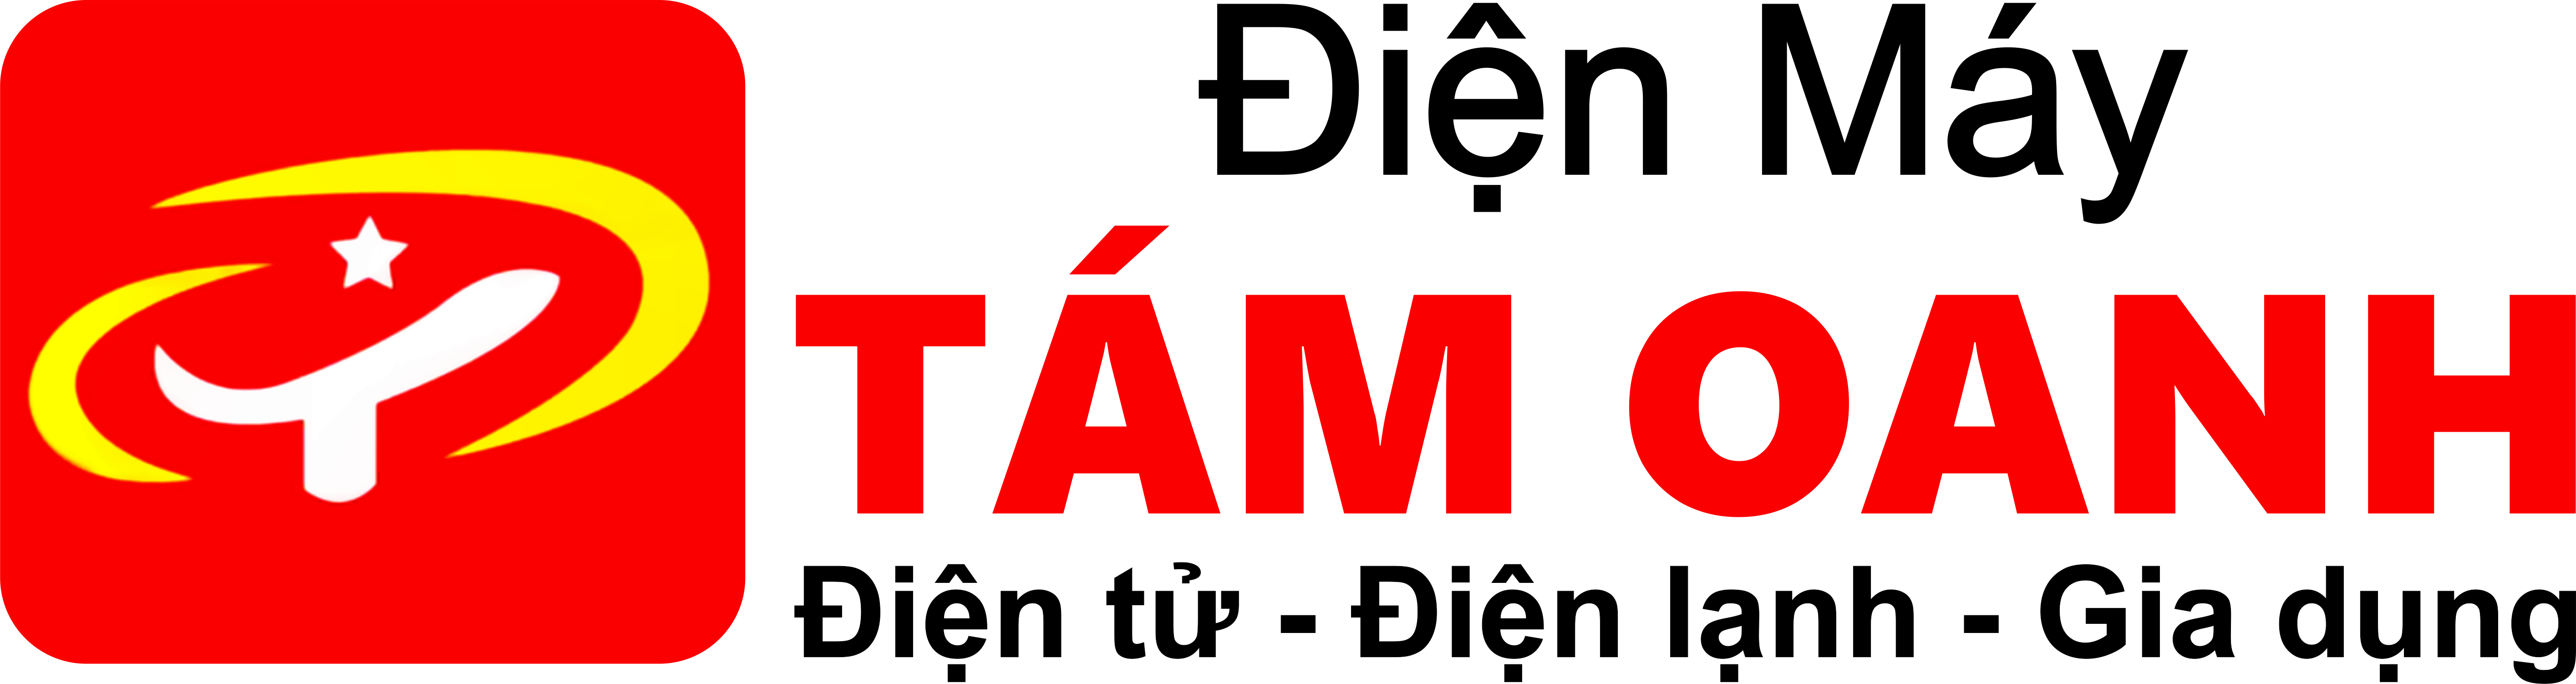 logo dienmaytamoanh